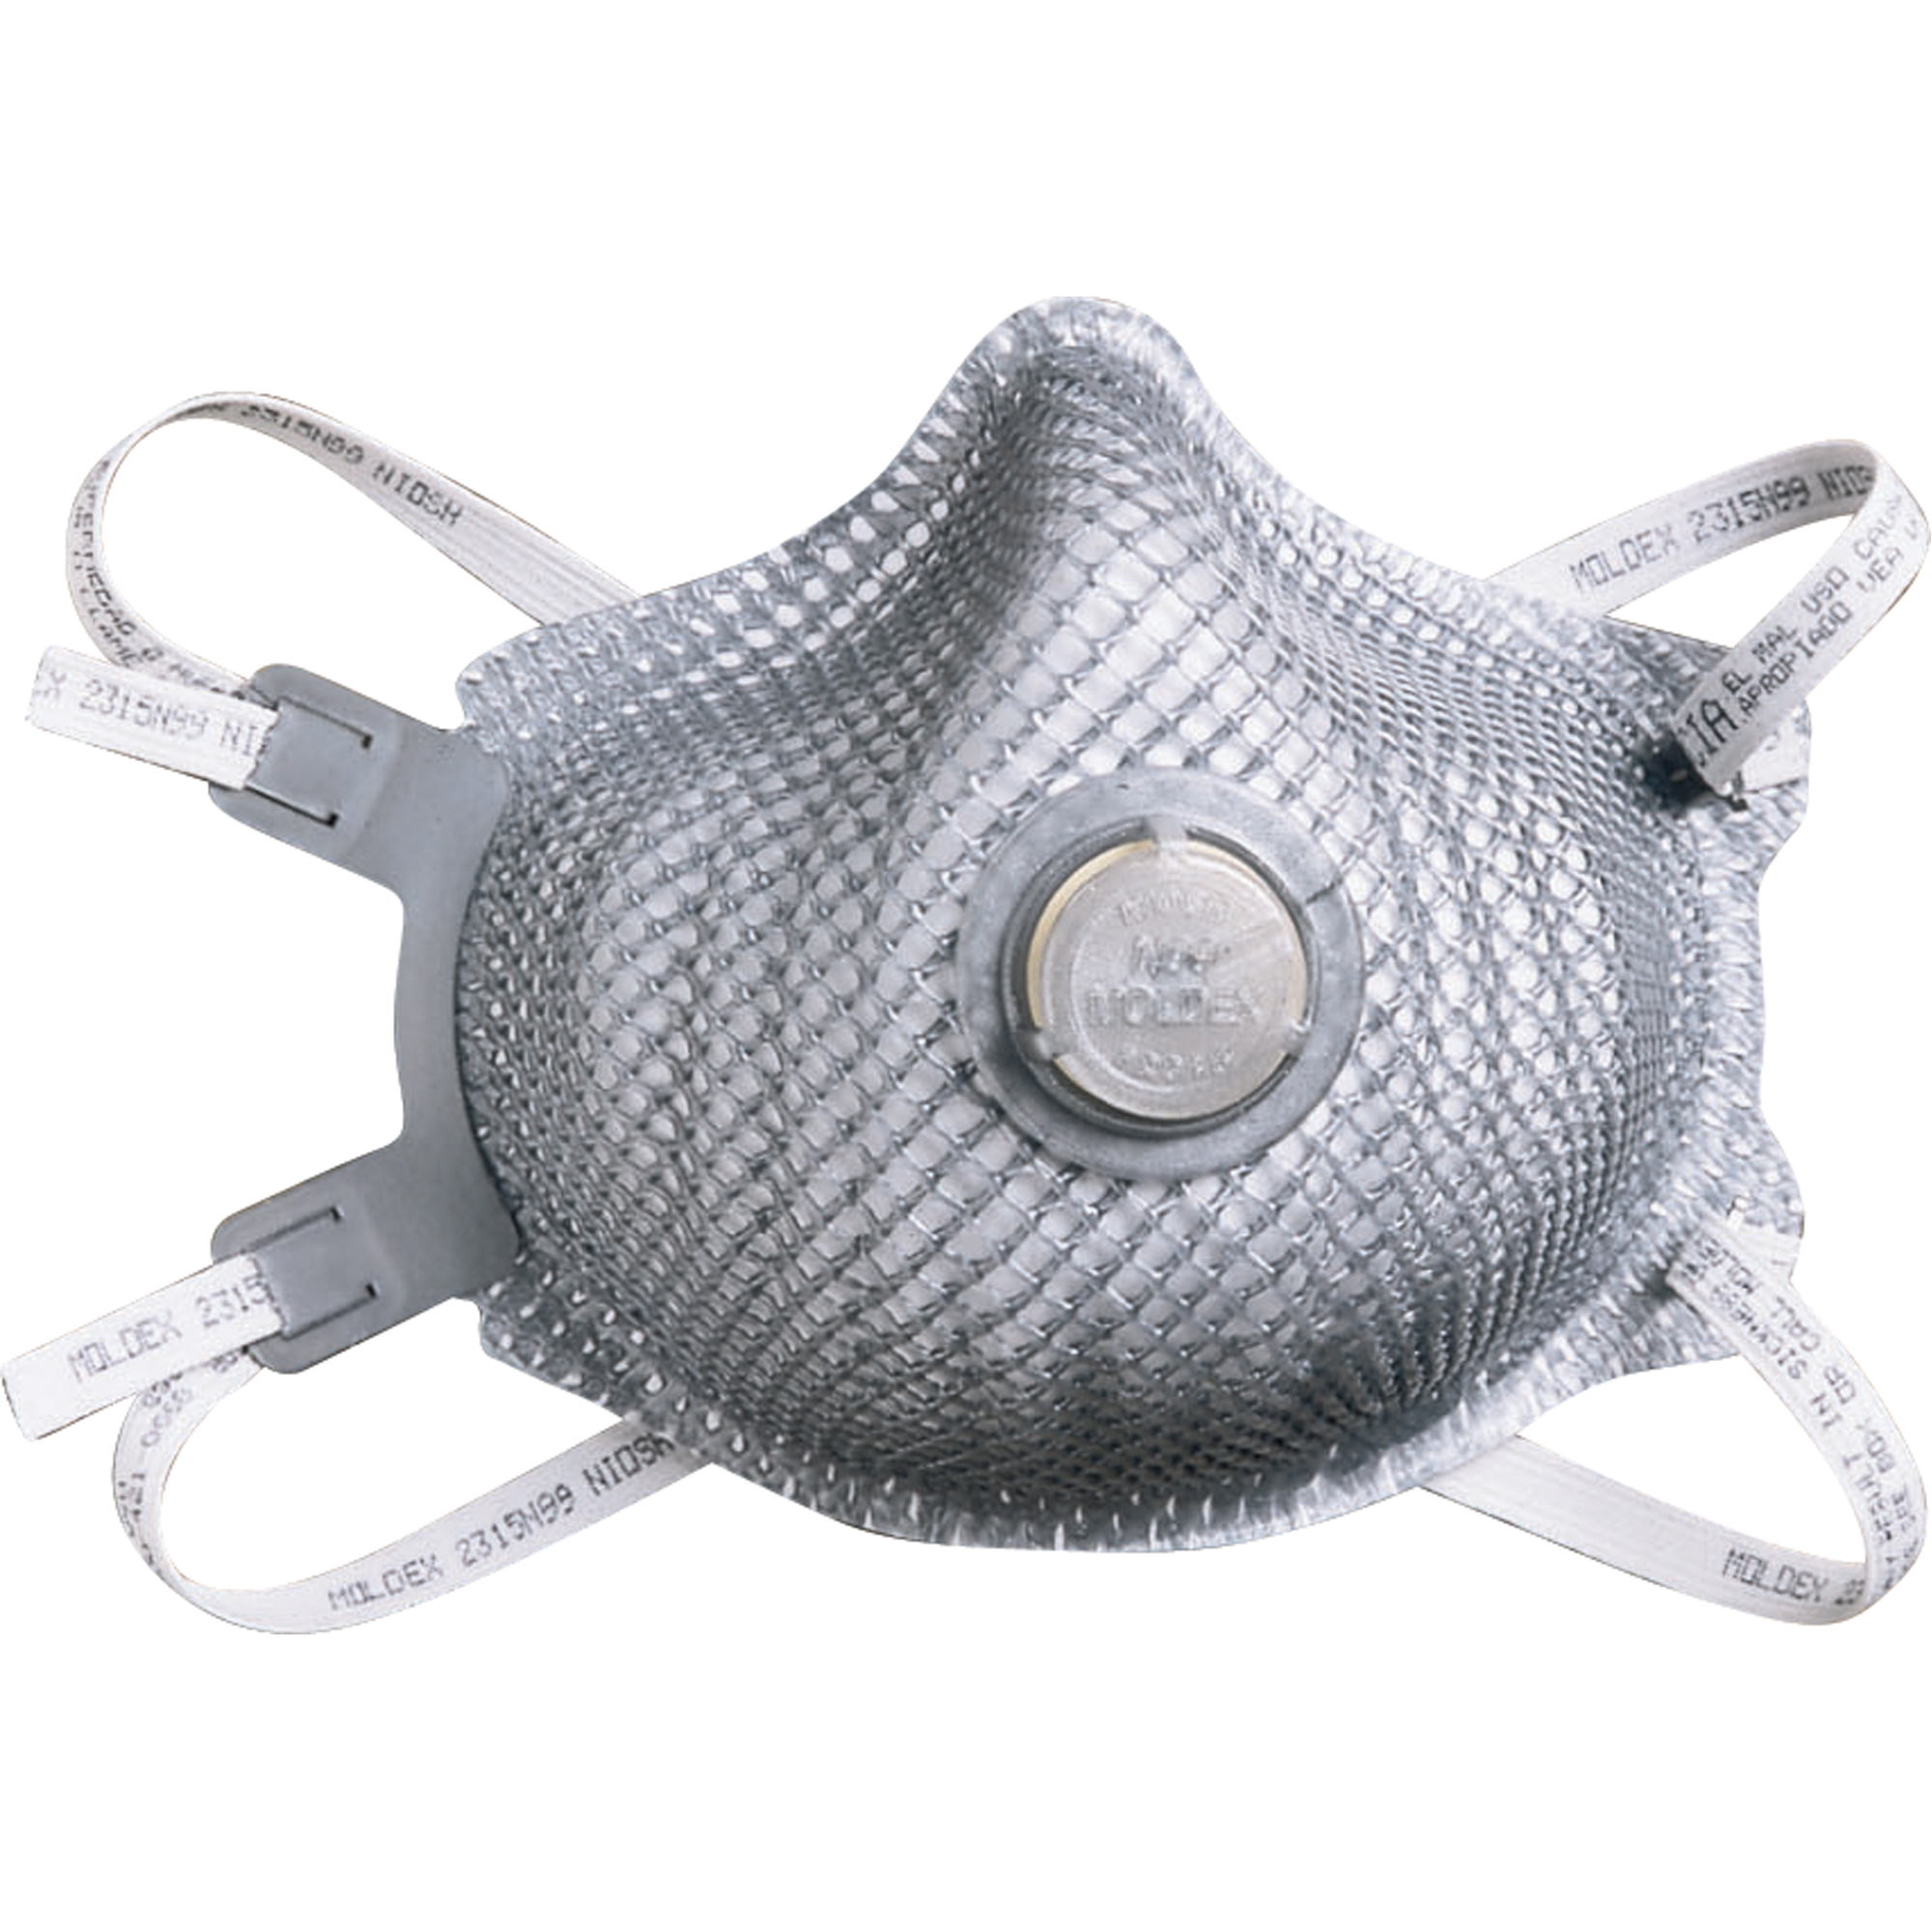 Moldex® N95 Particulate Respirators